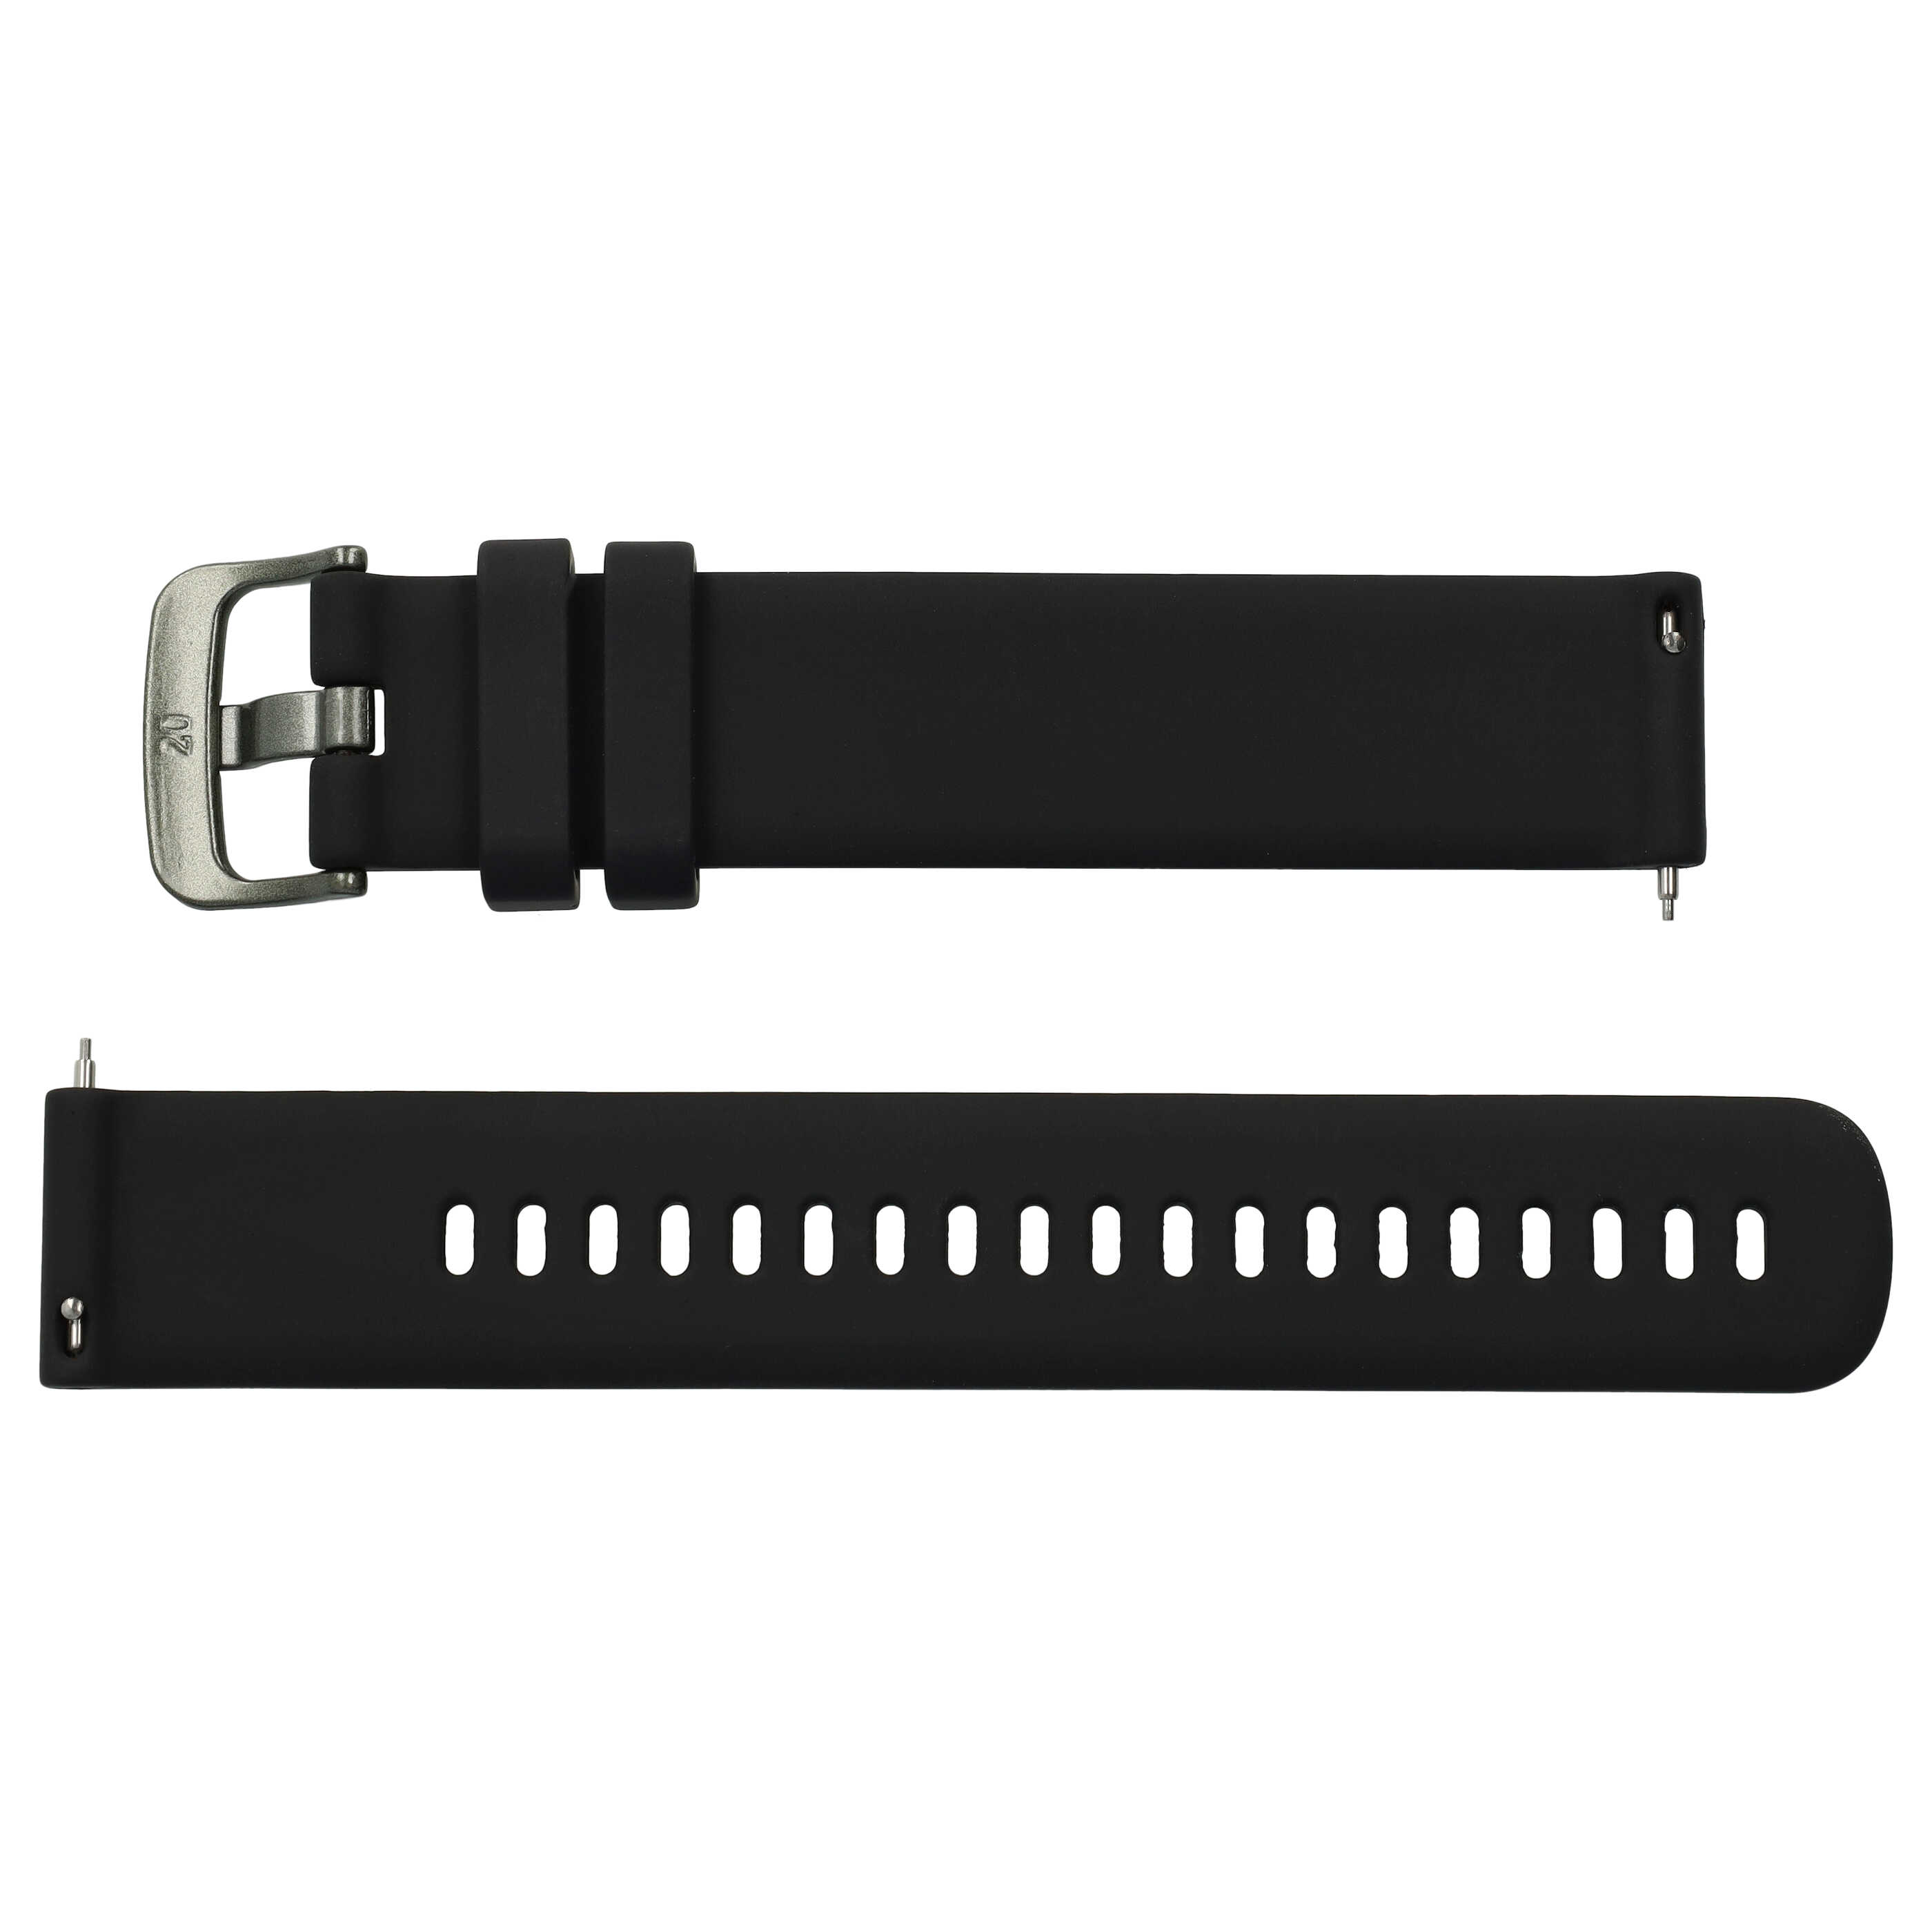 Pasek L do smartwatch Samsung Galaxy Watch - obwód nadgarstka do 260 mm , silikon, czarny